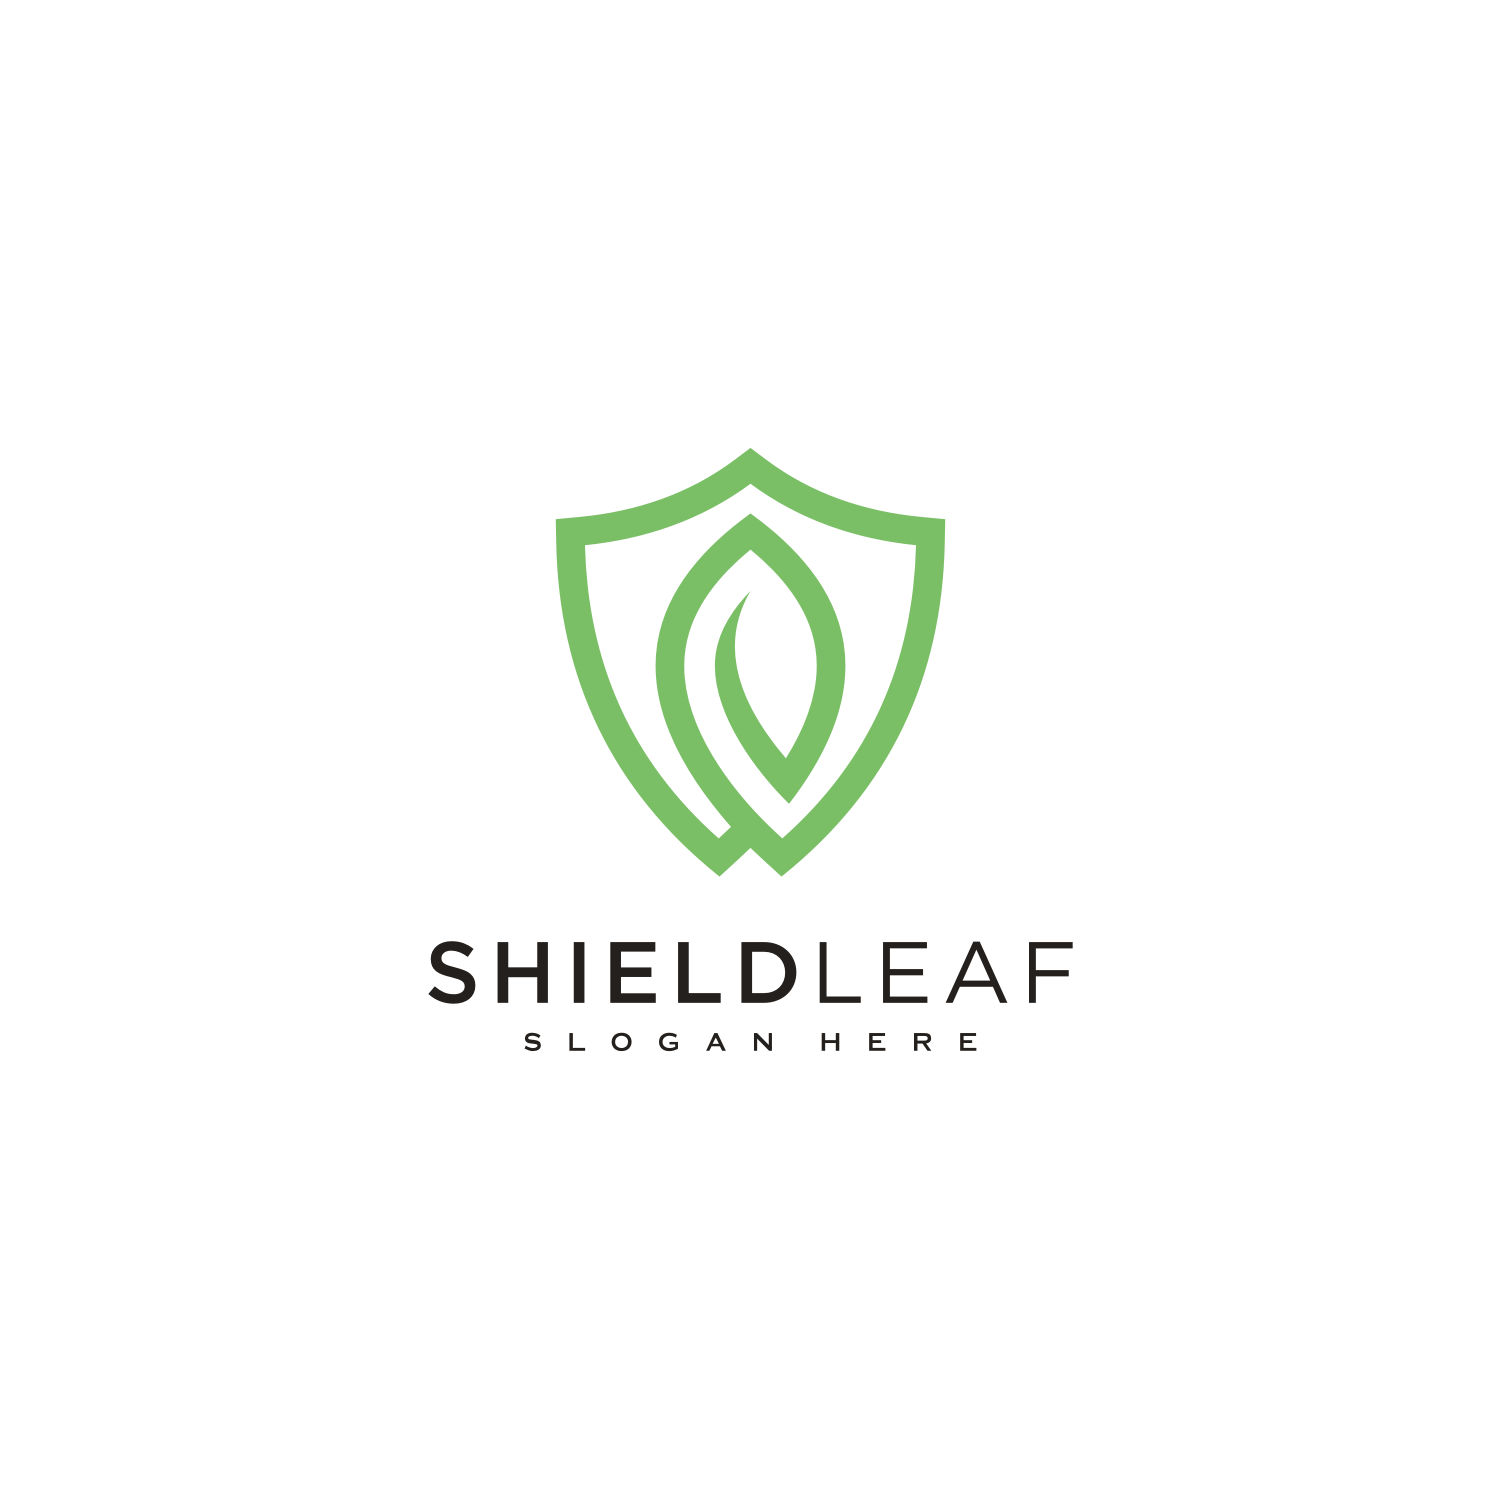 Shield Leaf Logo Vector Design cover image.